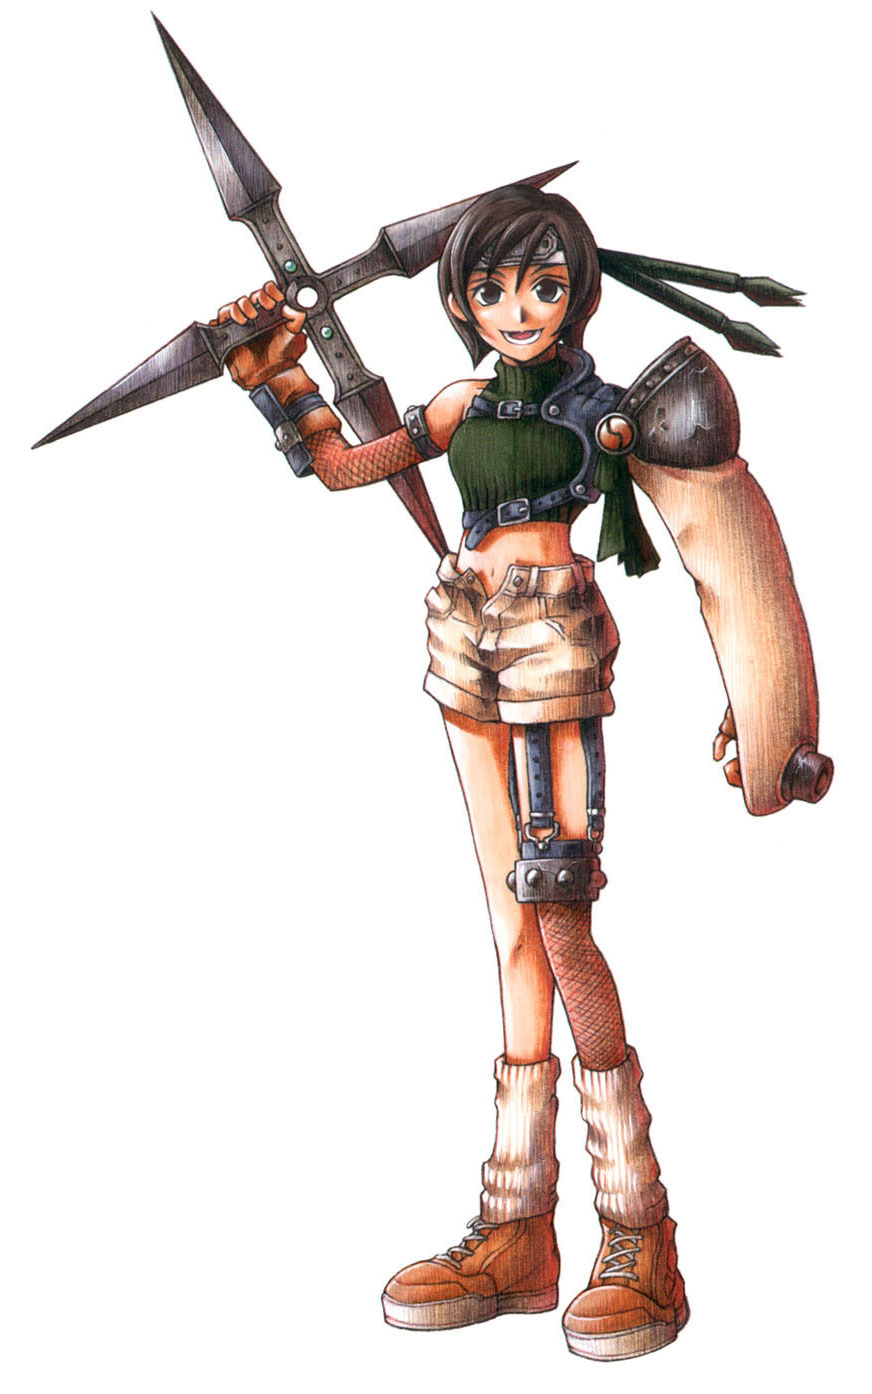 Yuffie Kisaragi - Final Fantasy: Hãy chiêm ngưỡng vẻ đẹp kiêu sa và bảo vệ lãnh thổ của Yuffie Kisaragi trong thế giới Final Fantasy.